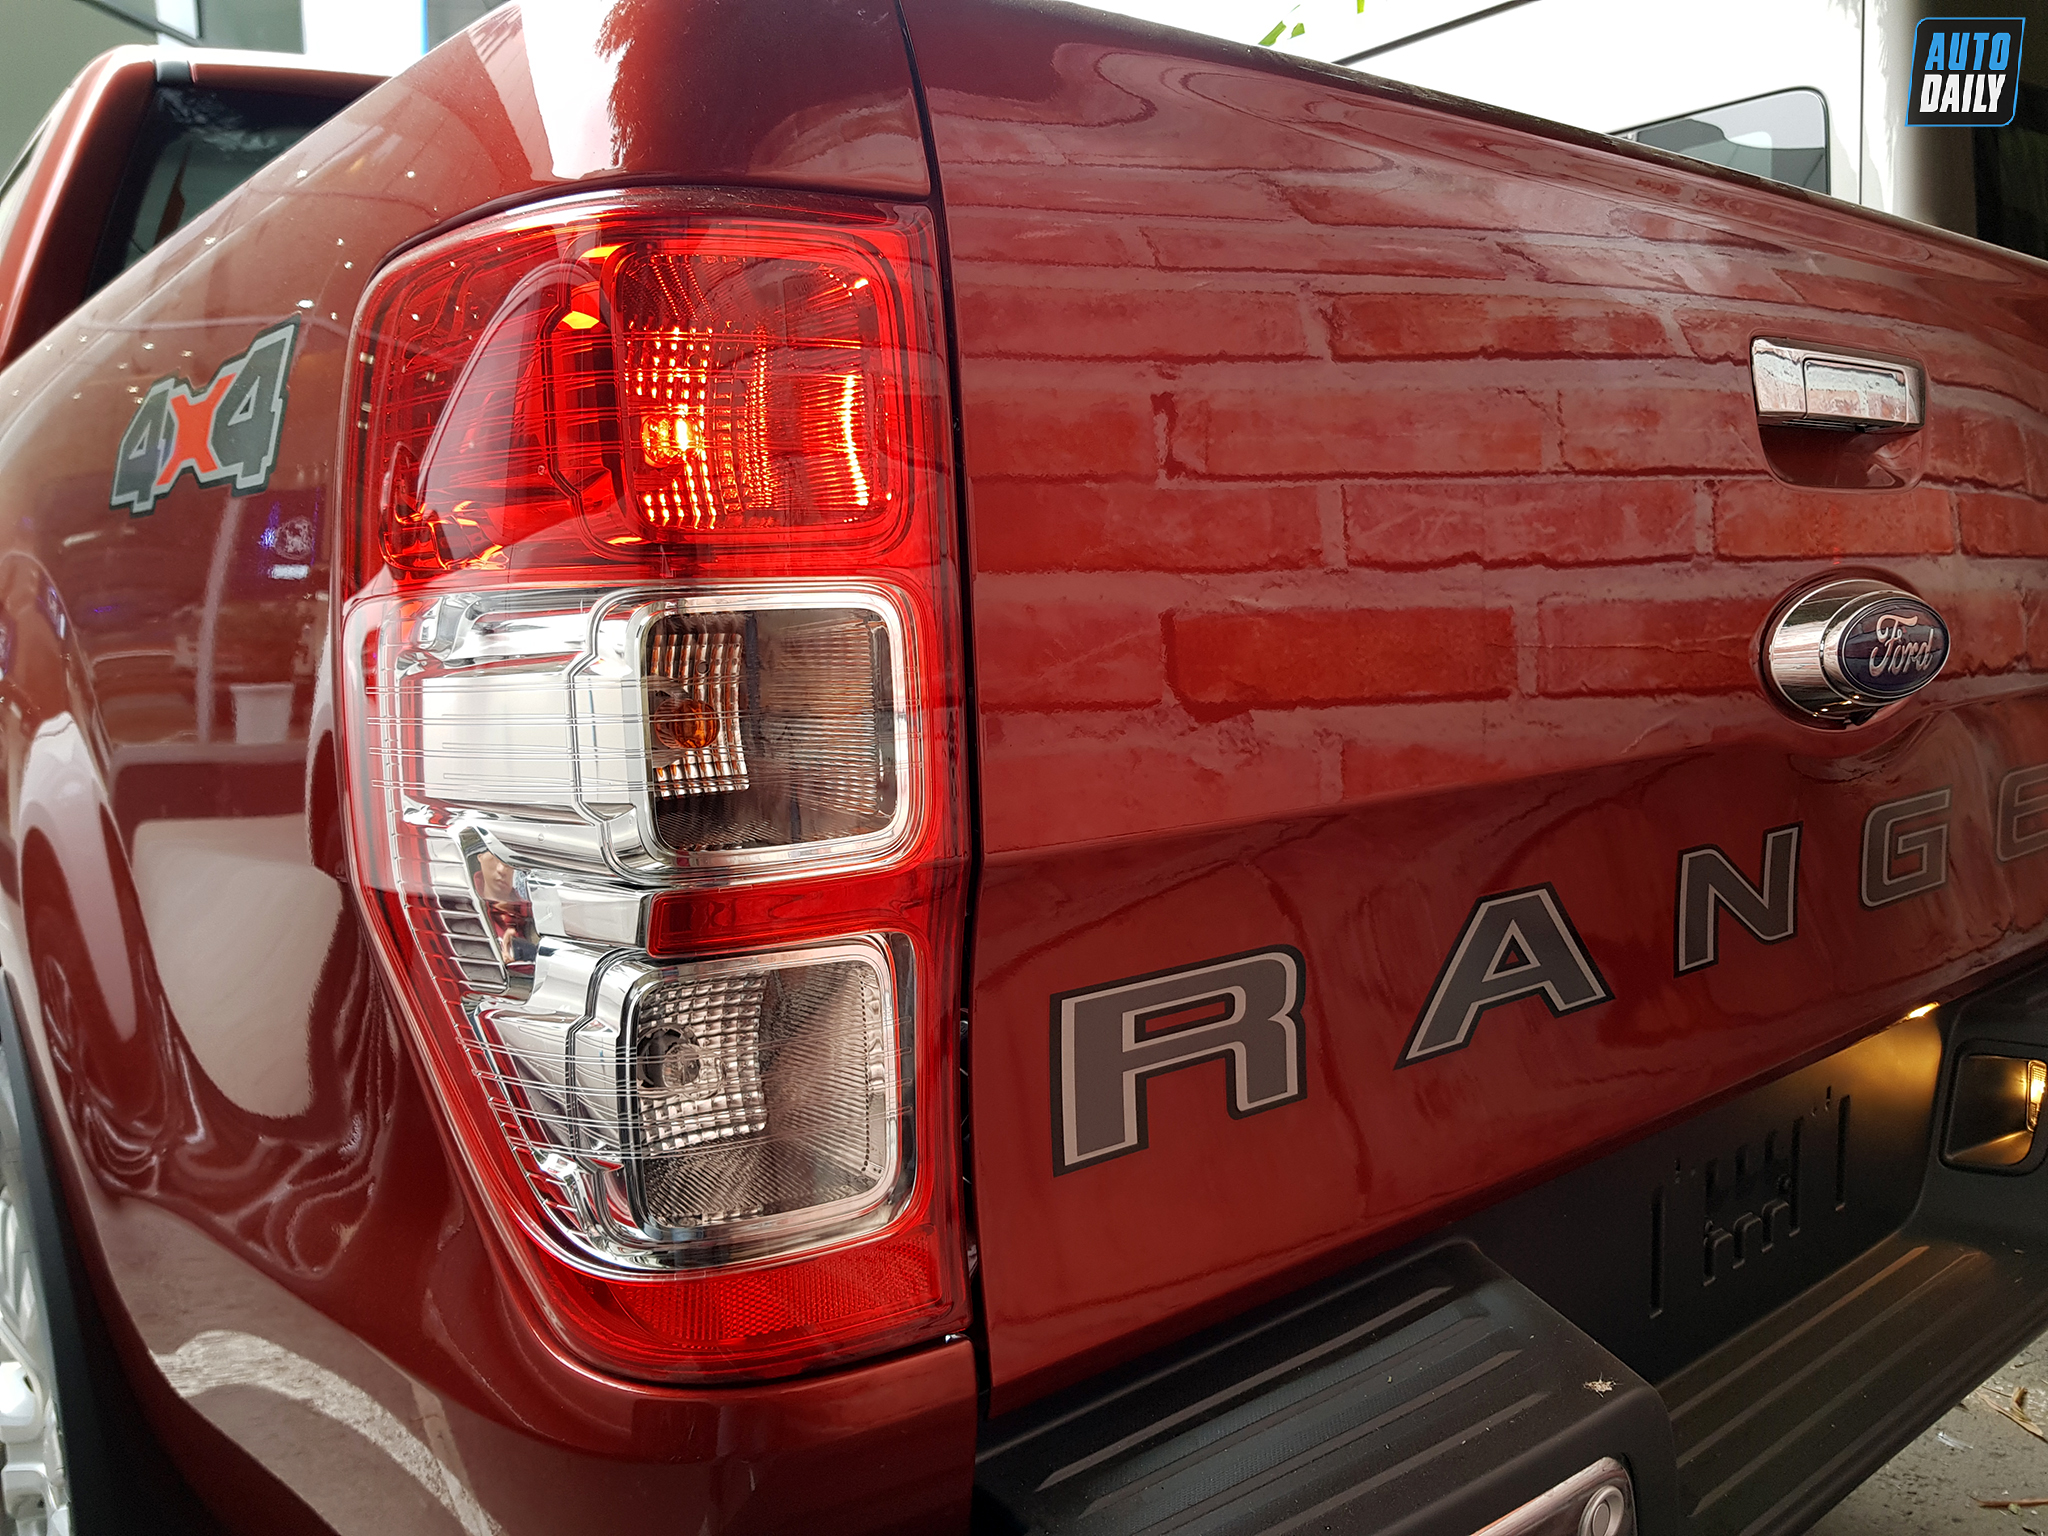 Ford Ranger 2021 về đại lý, giá từ 616 triệu đồng ford-ranger-18.jpg